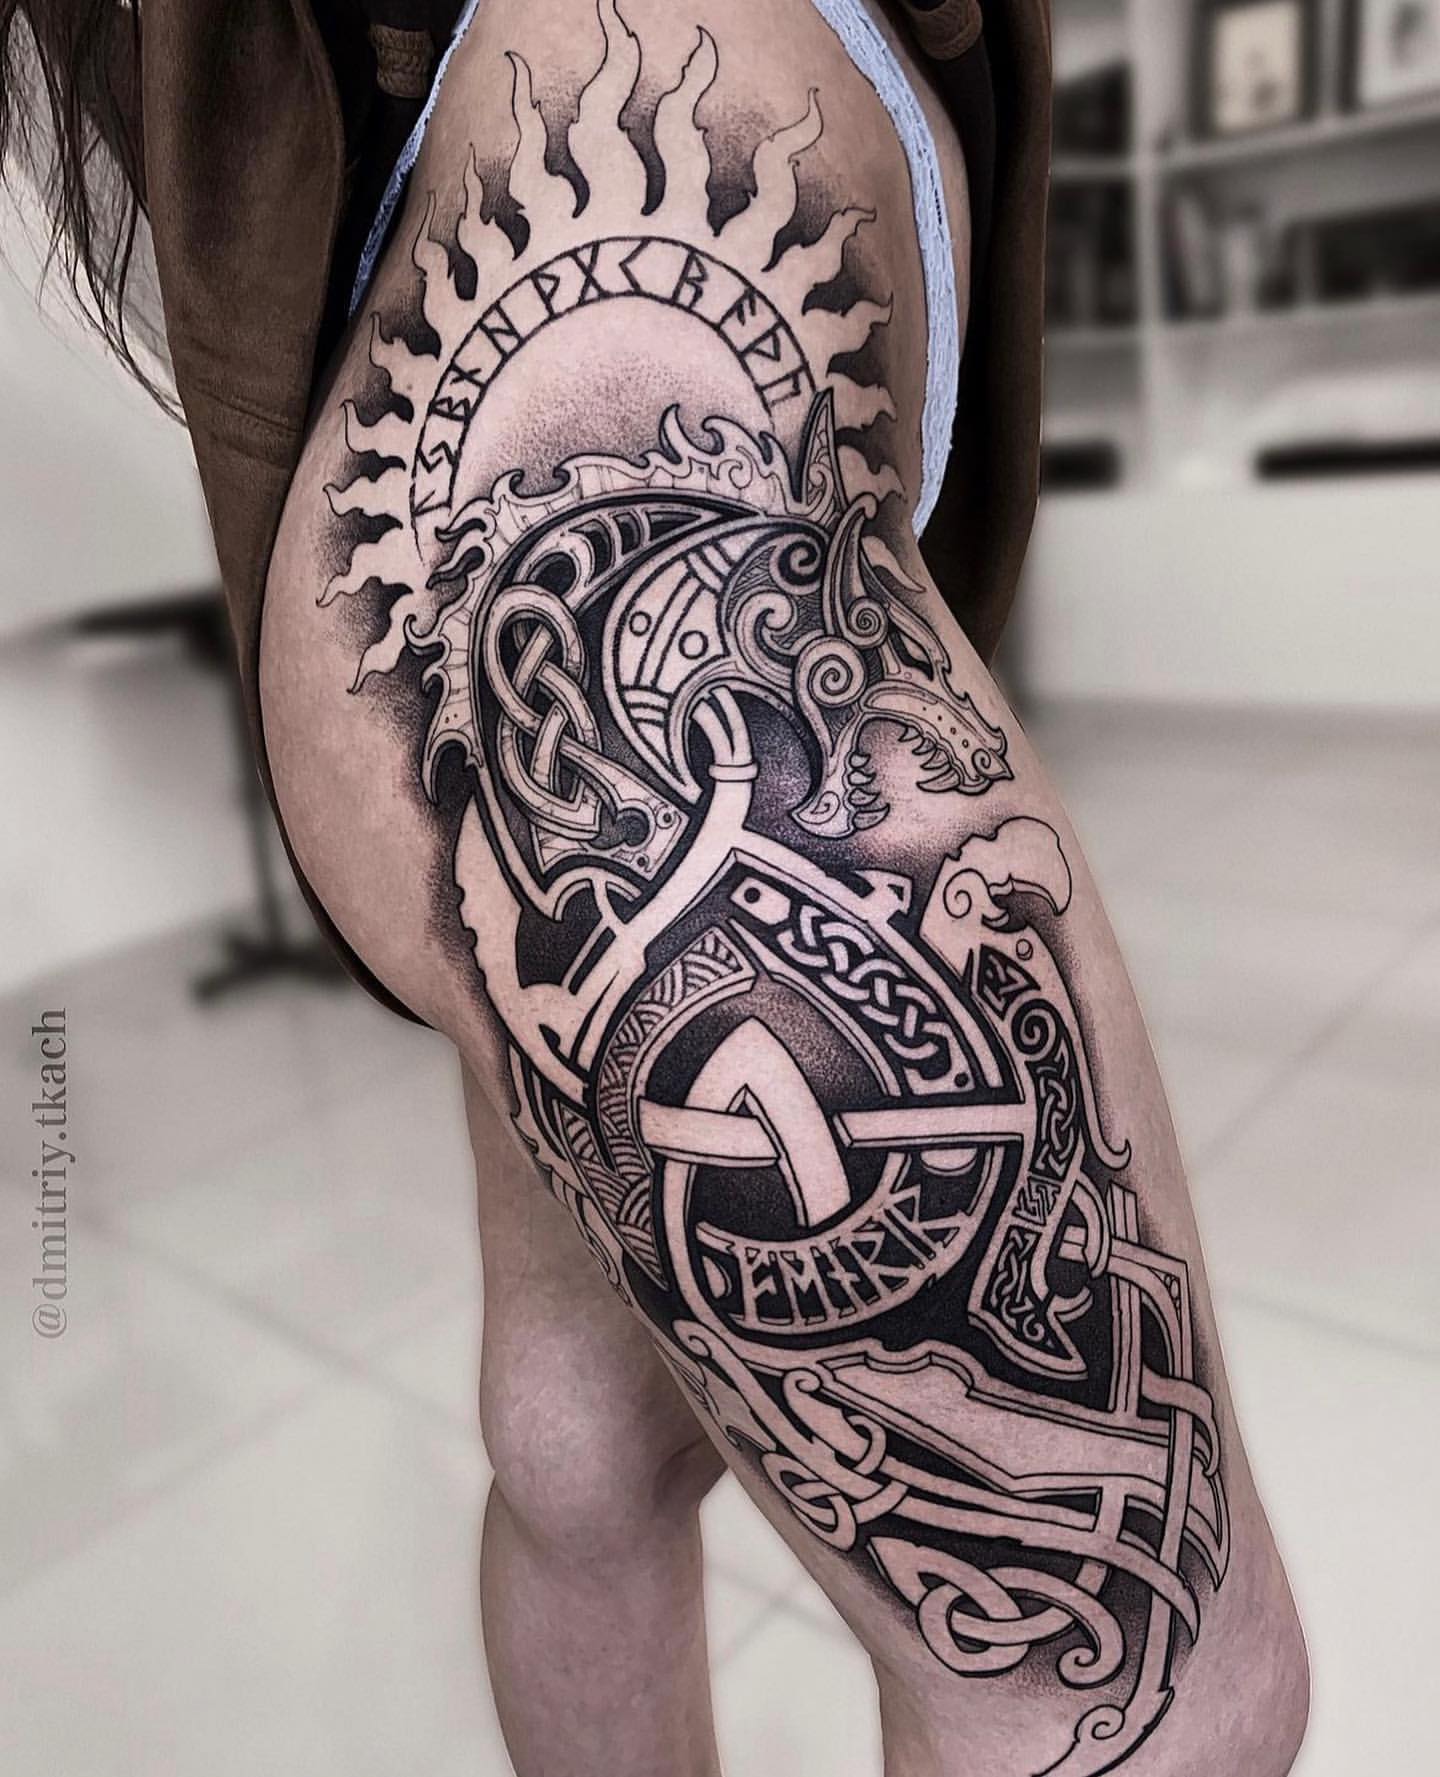 Scandinavian tattoo designs